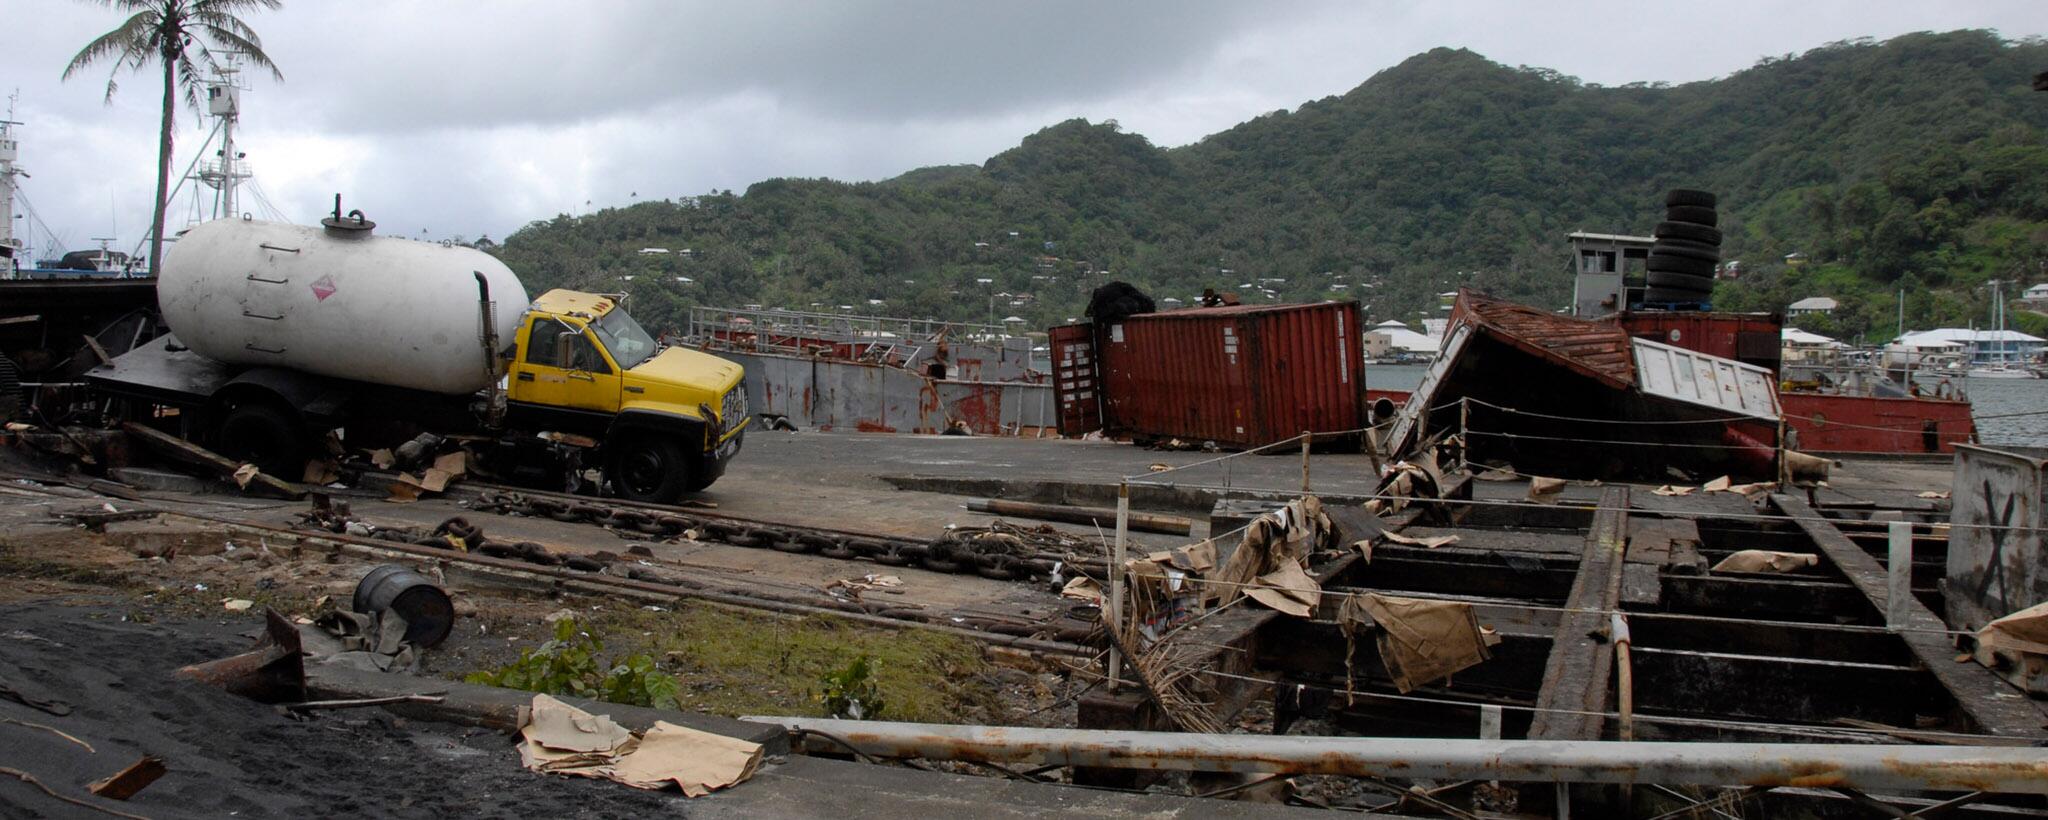 tsunami damage in American Samoa